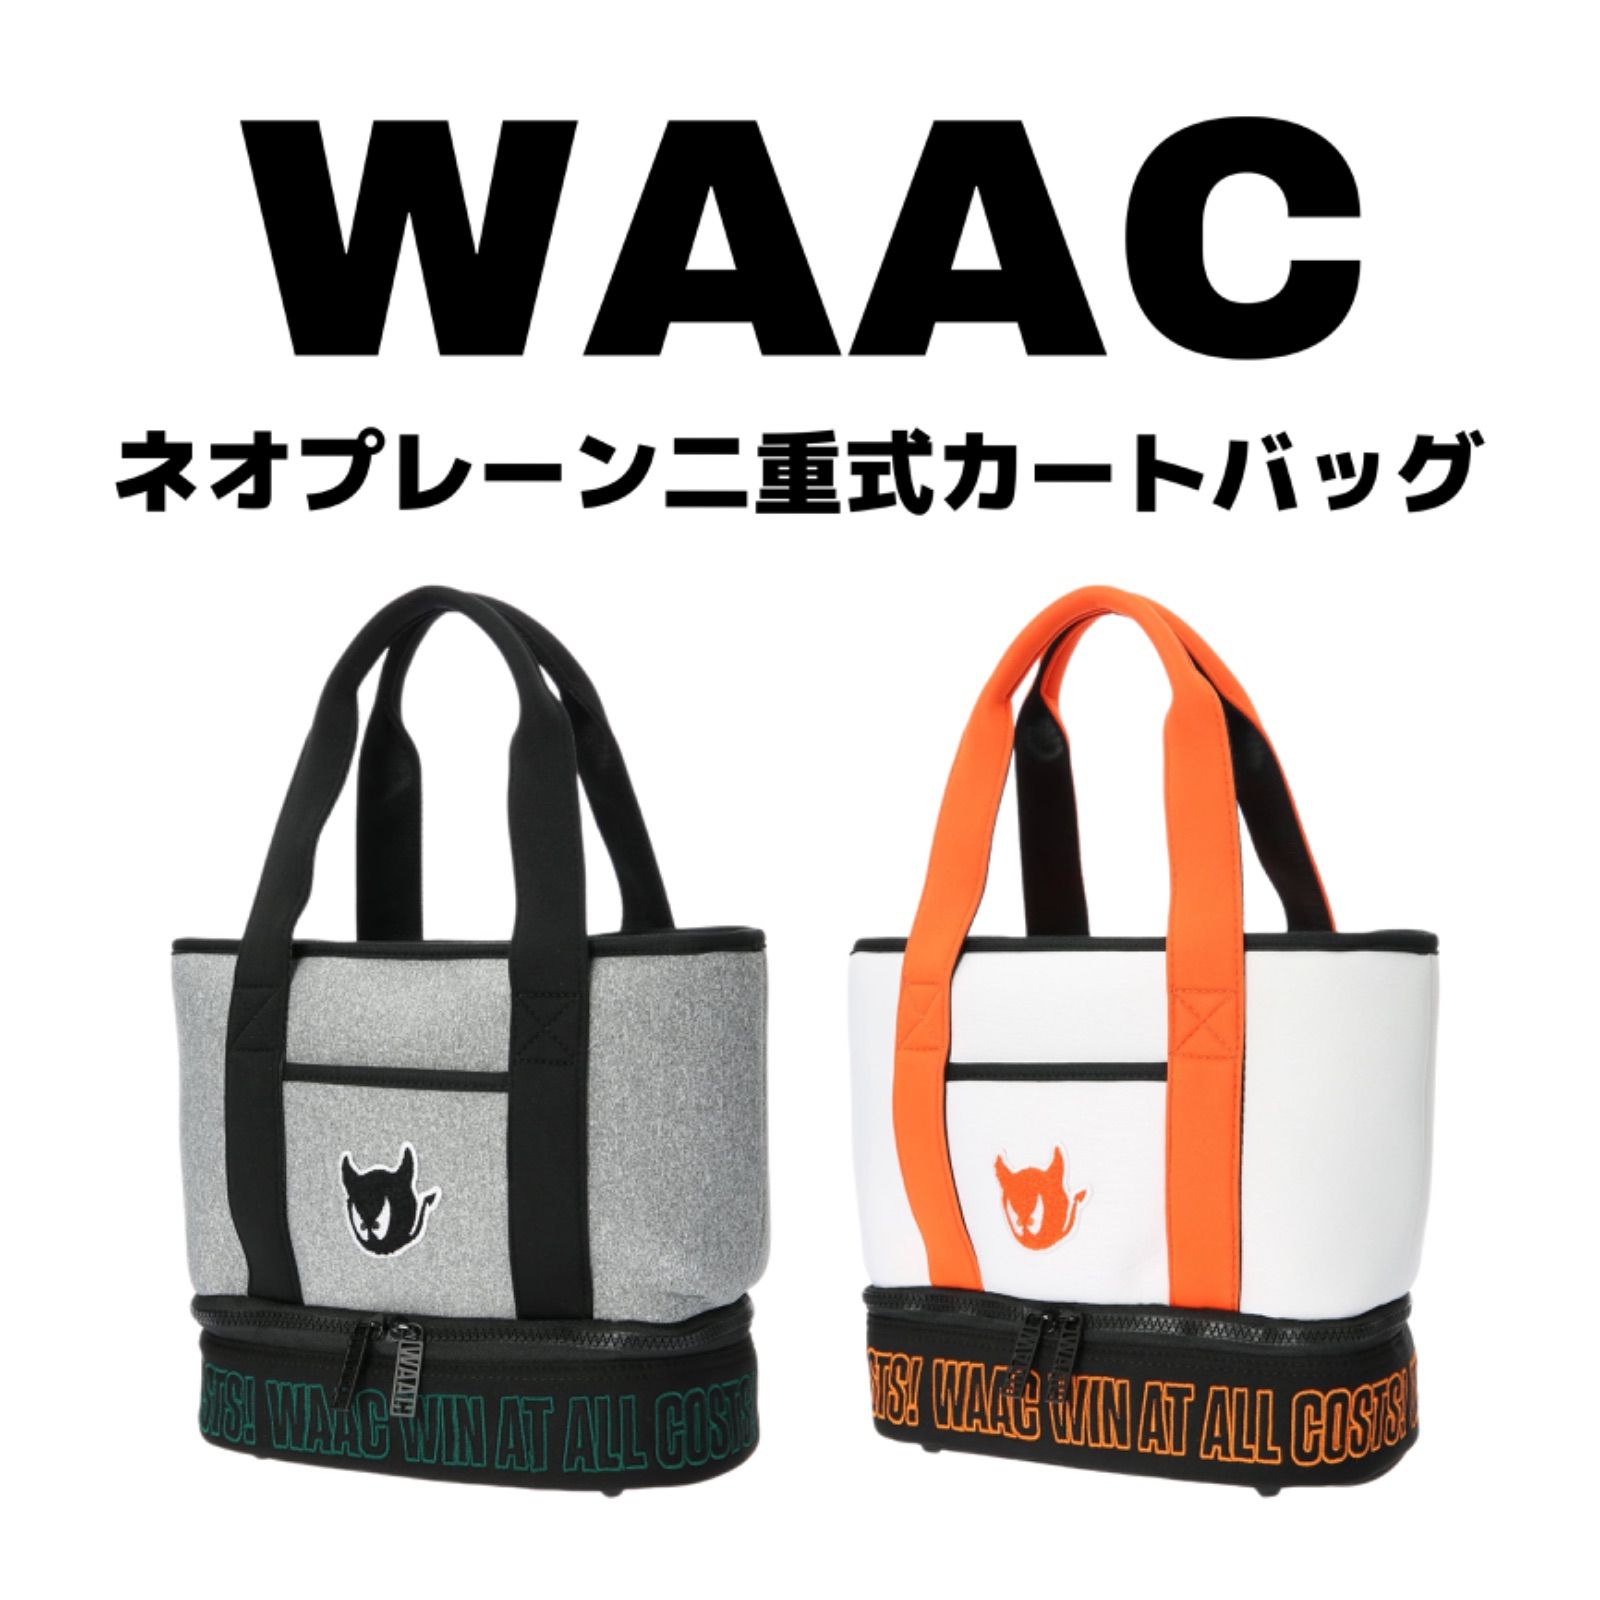 WAAC カートバッグ - メルカリ